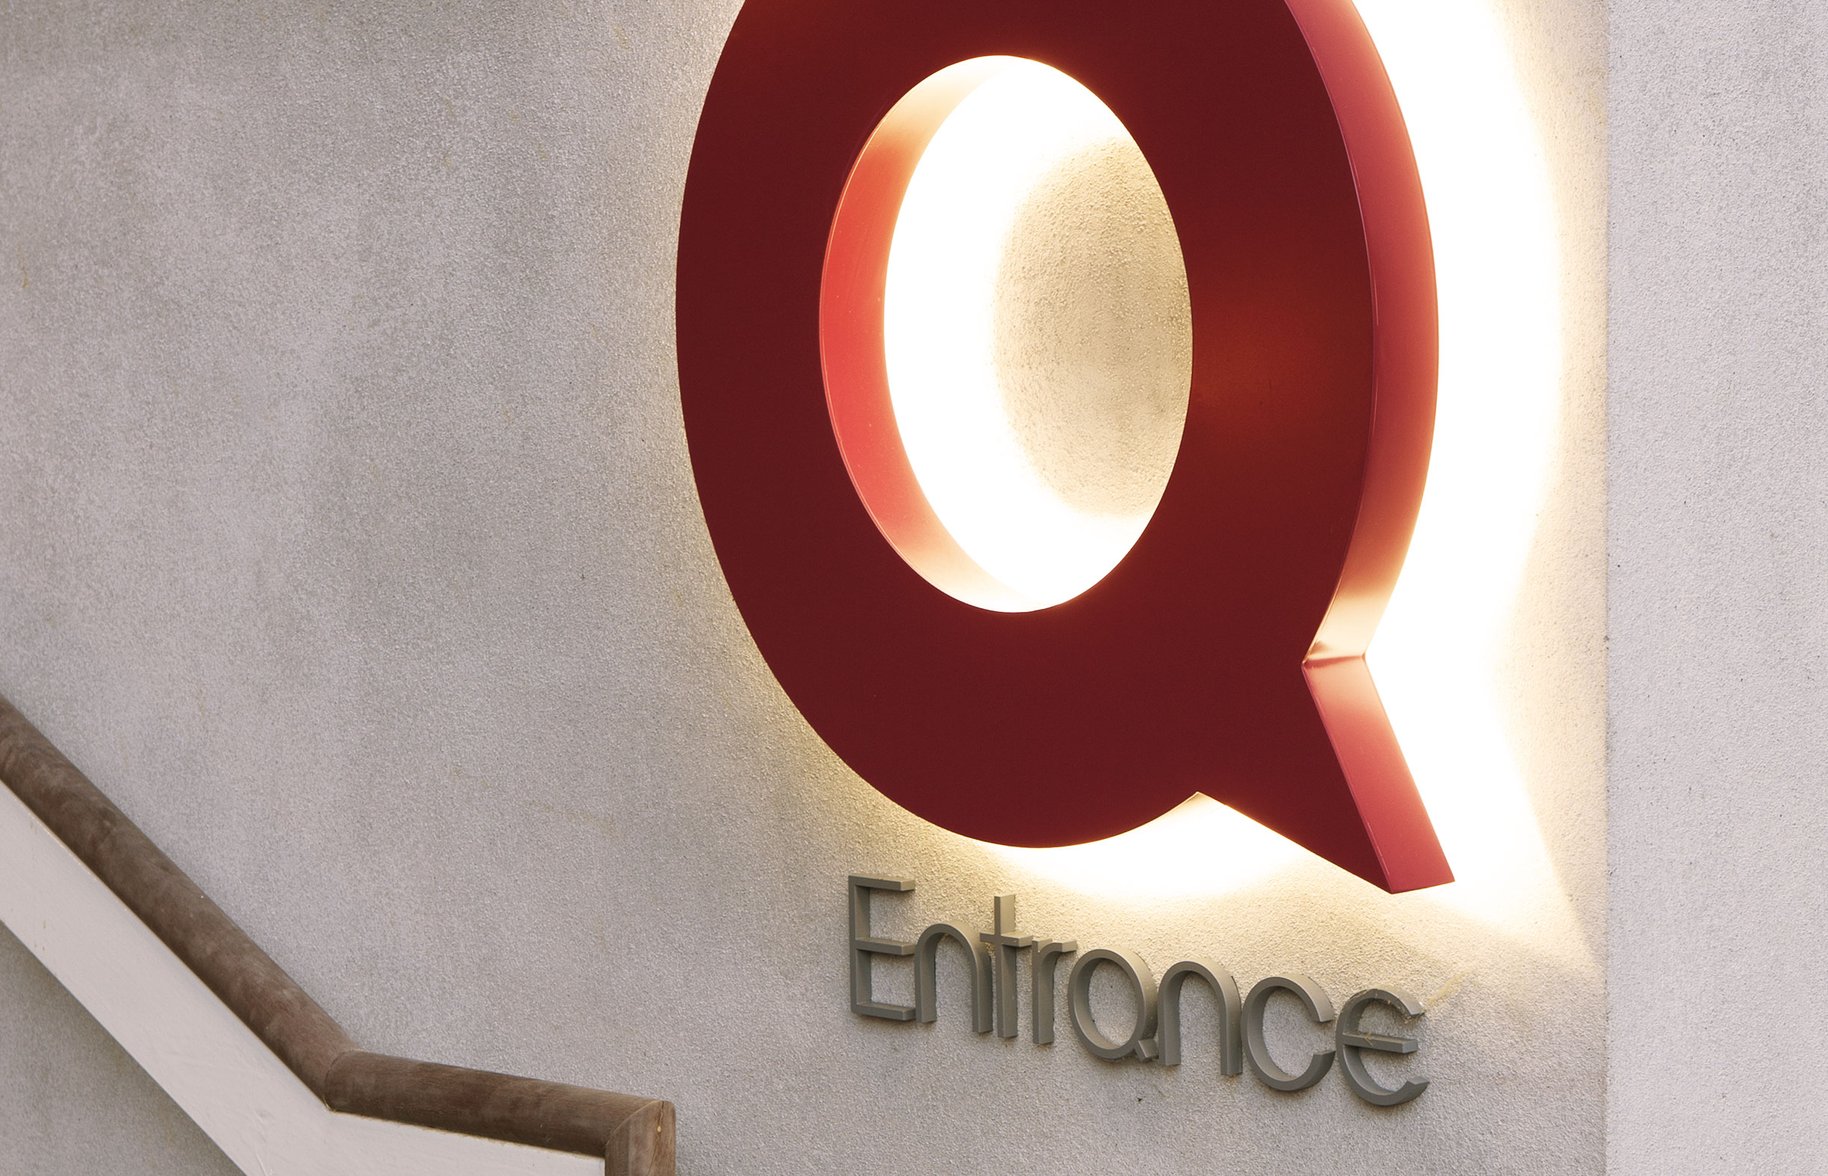 Q Theatre spatial design entrance sign